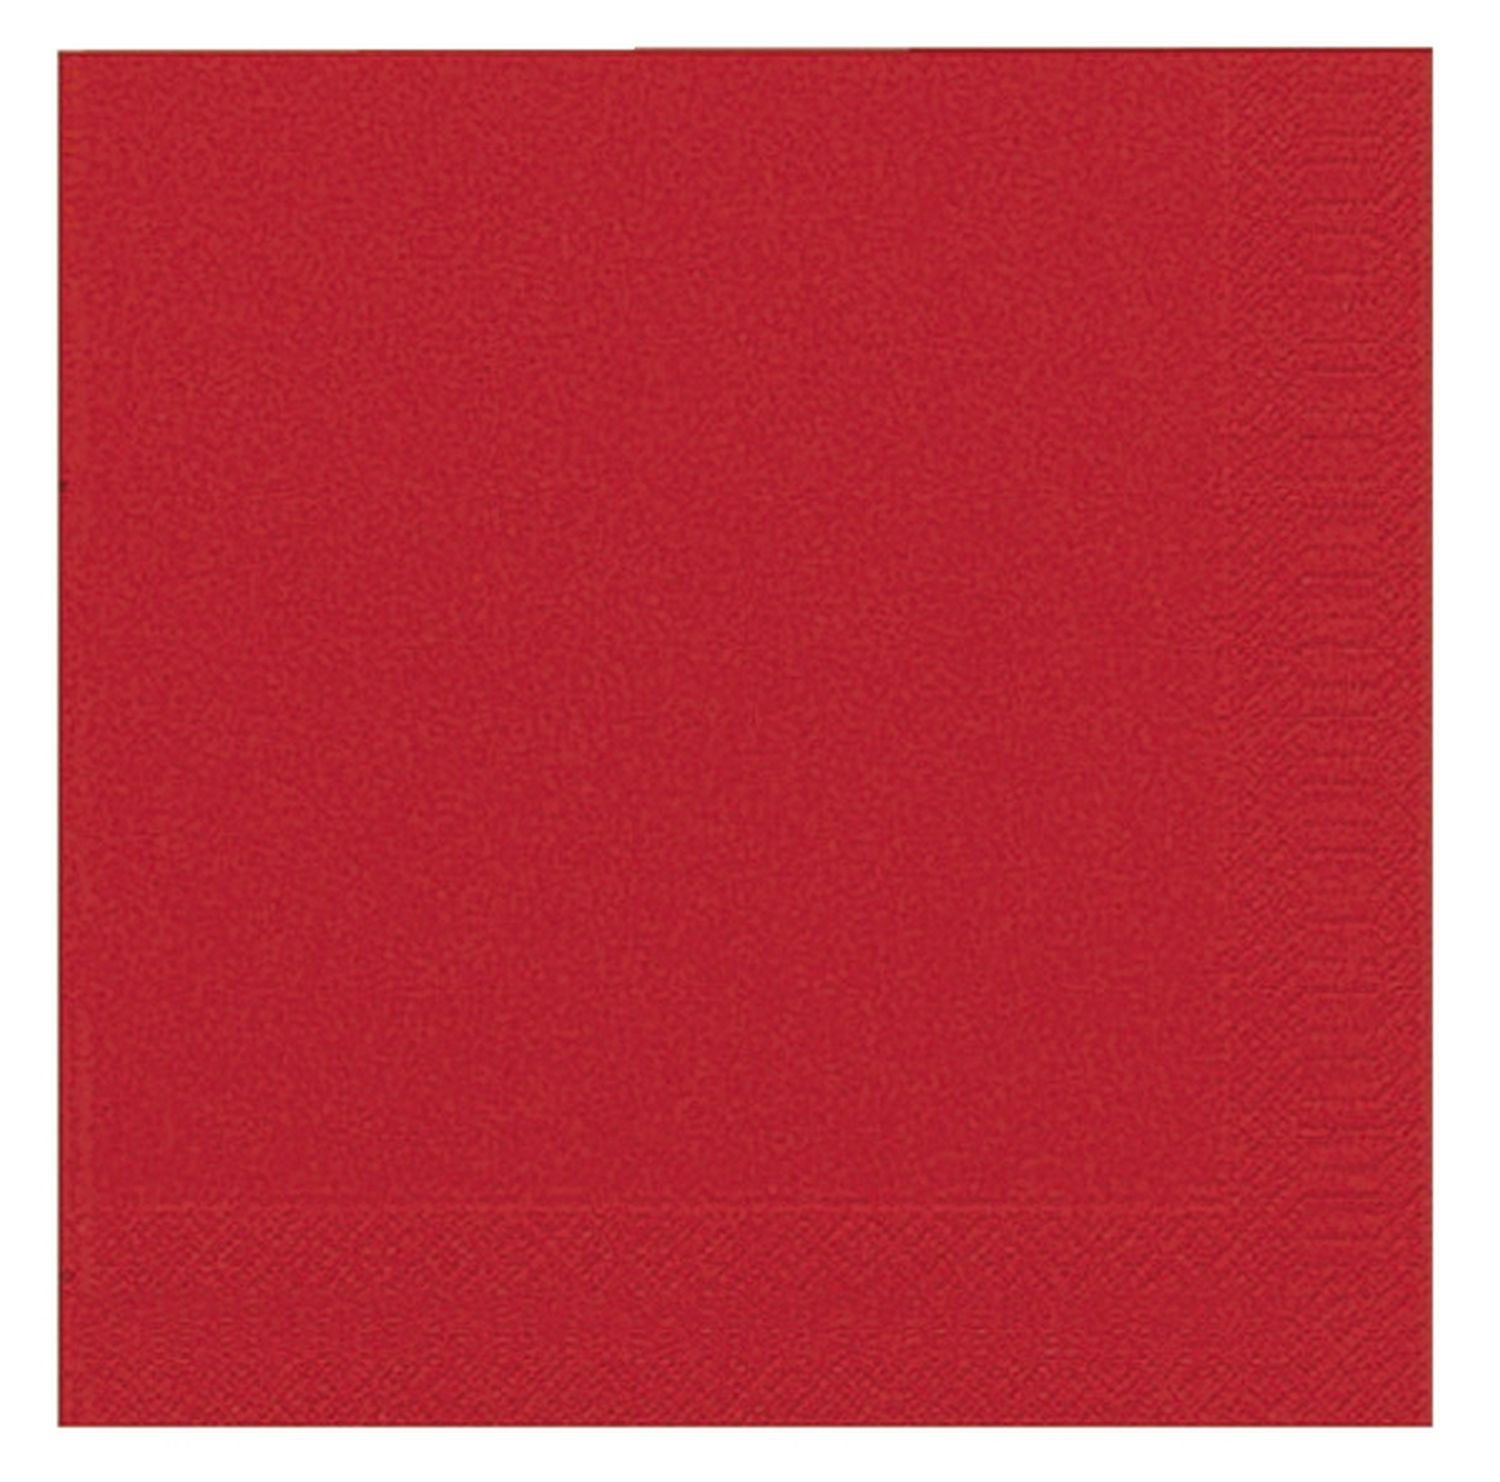 Dinner-Servietten 3lagig Tissue Uni brillant rot, 40 x 40 cm, 20 Stück